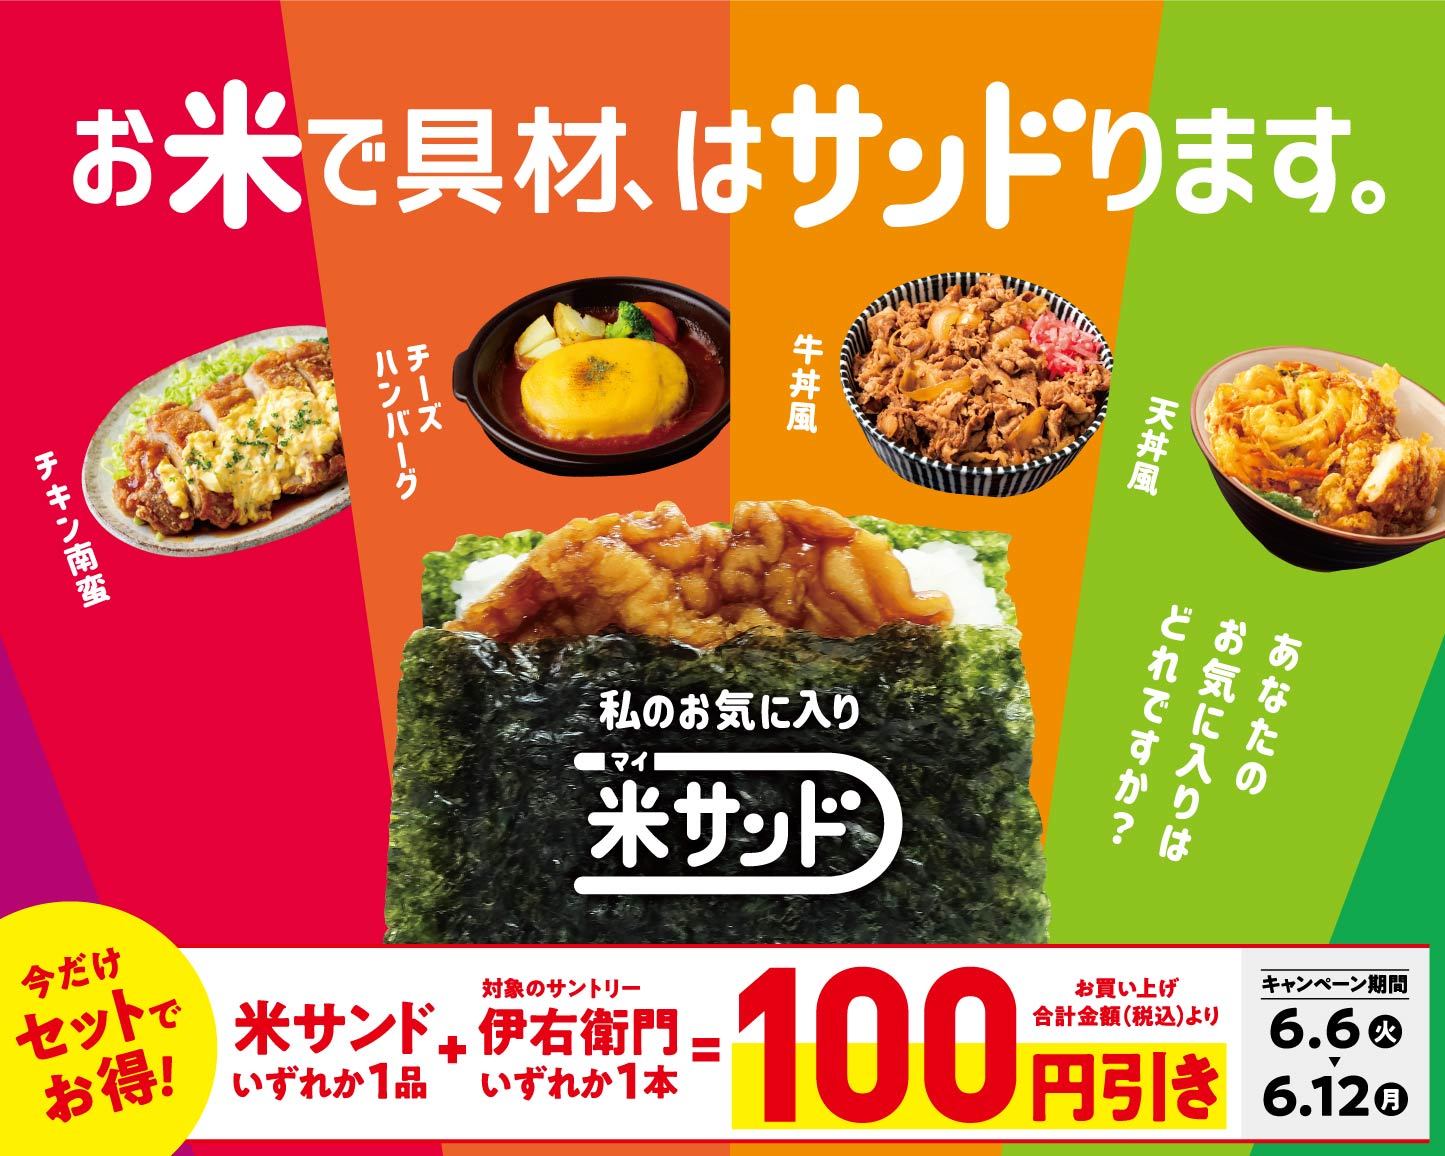 茨城県産の”極上”ブランドメロン「イバラキング」を贅沢に使用した『“イバラキング”メロンショートケーキ』が新登場！